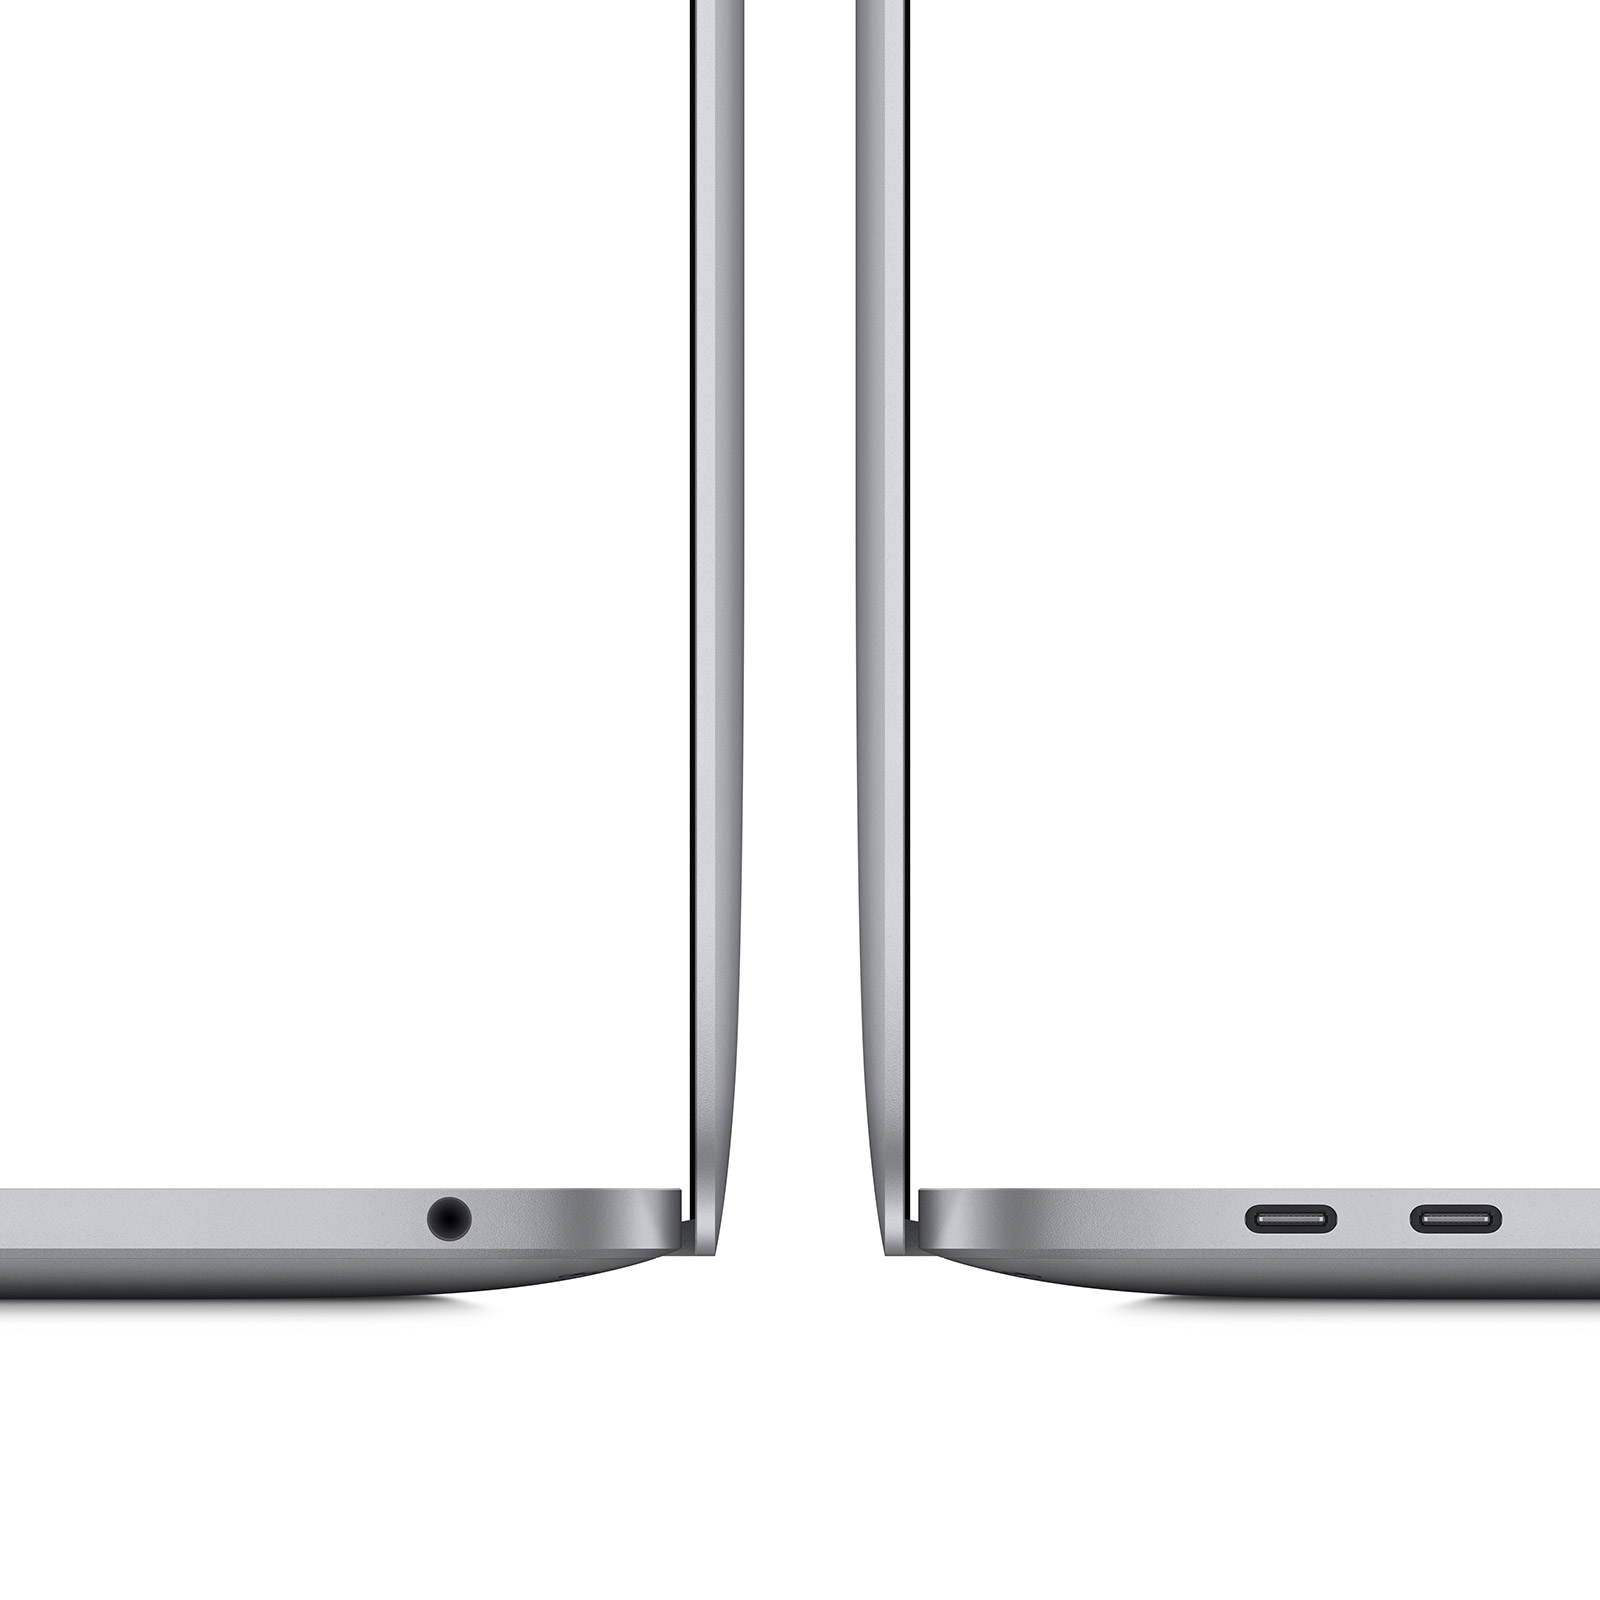 OCCASION-MacBook-Pro-13-3-M1-8-Core-16-GB-2-TB-8-Core-Grafik-CH-Space-Grau-05.jpg